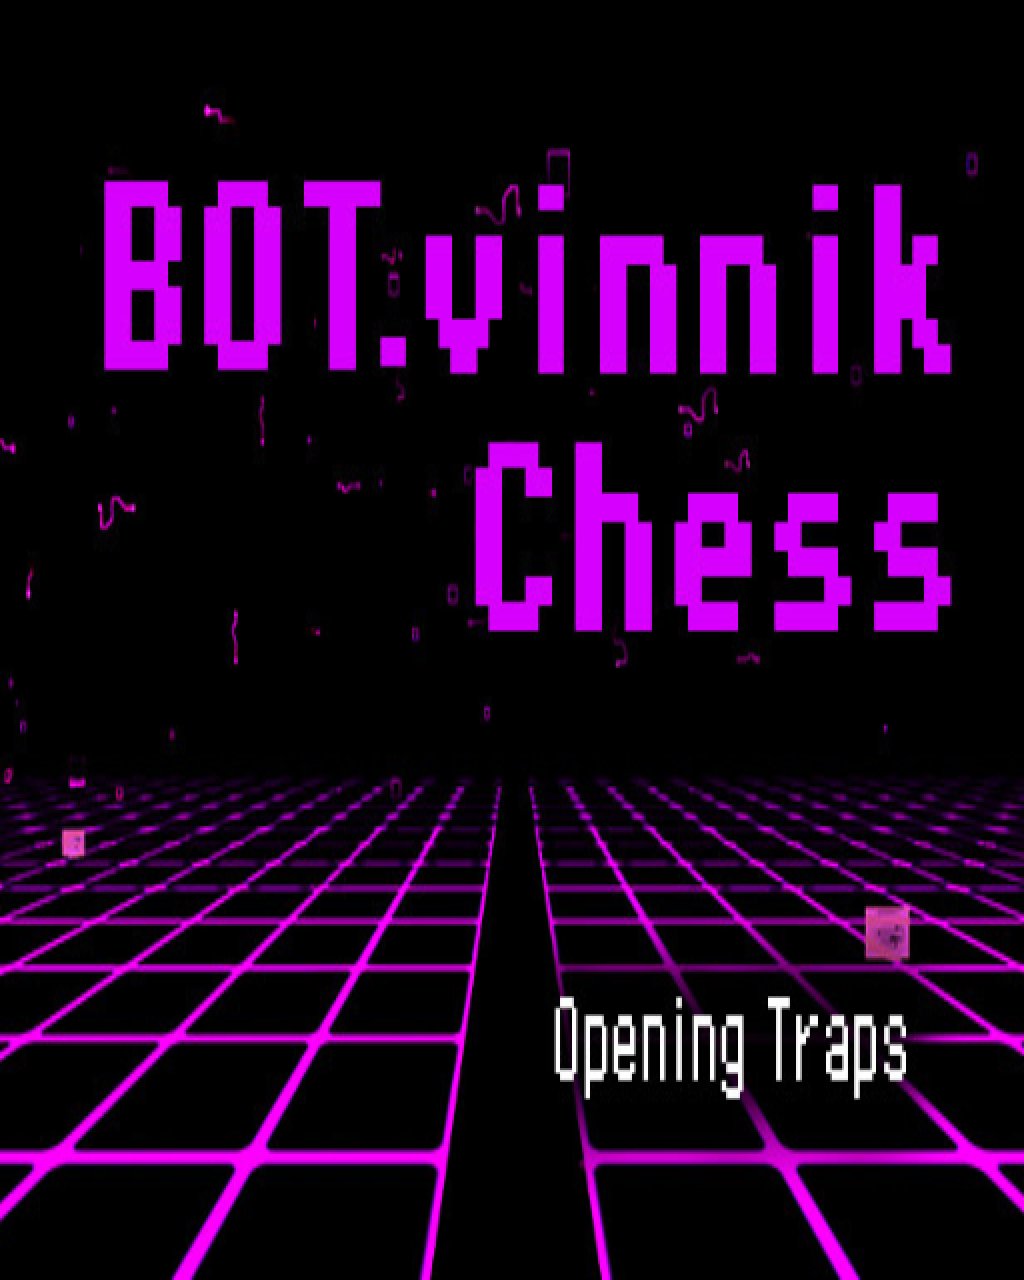 ESD BOT.vinnik Chess Opening Traps